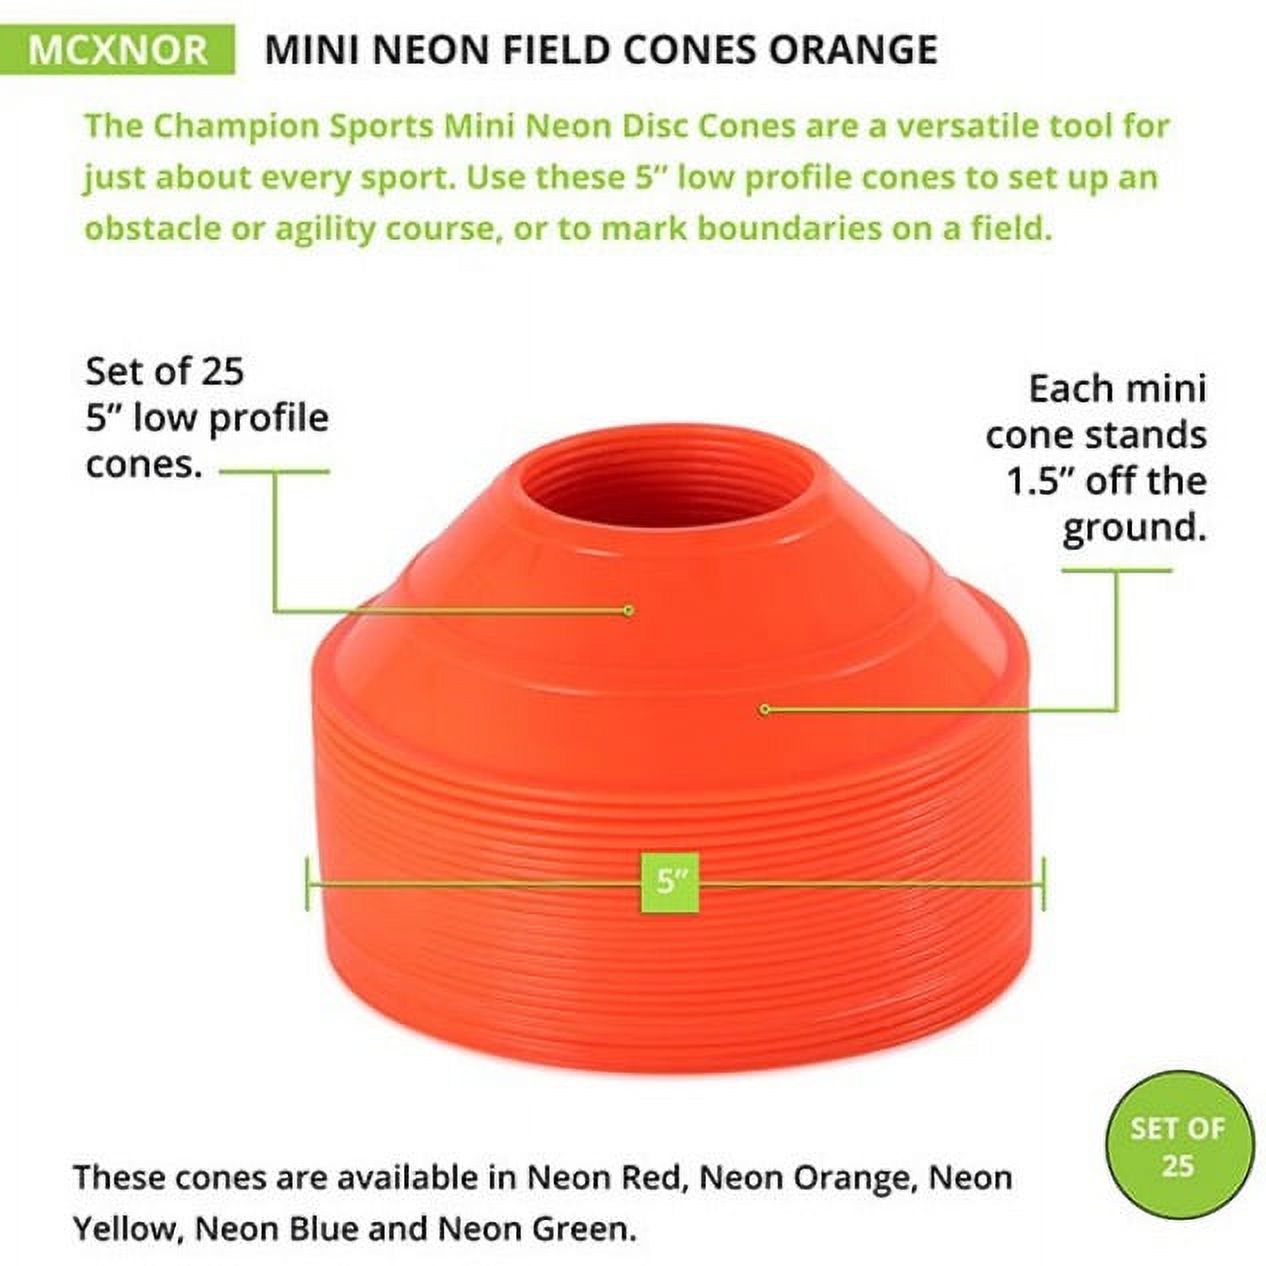 Champion Sports Mini Neon Field Cones Orange - image 3 of 4